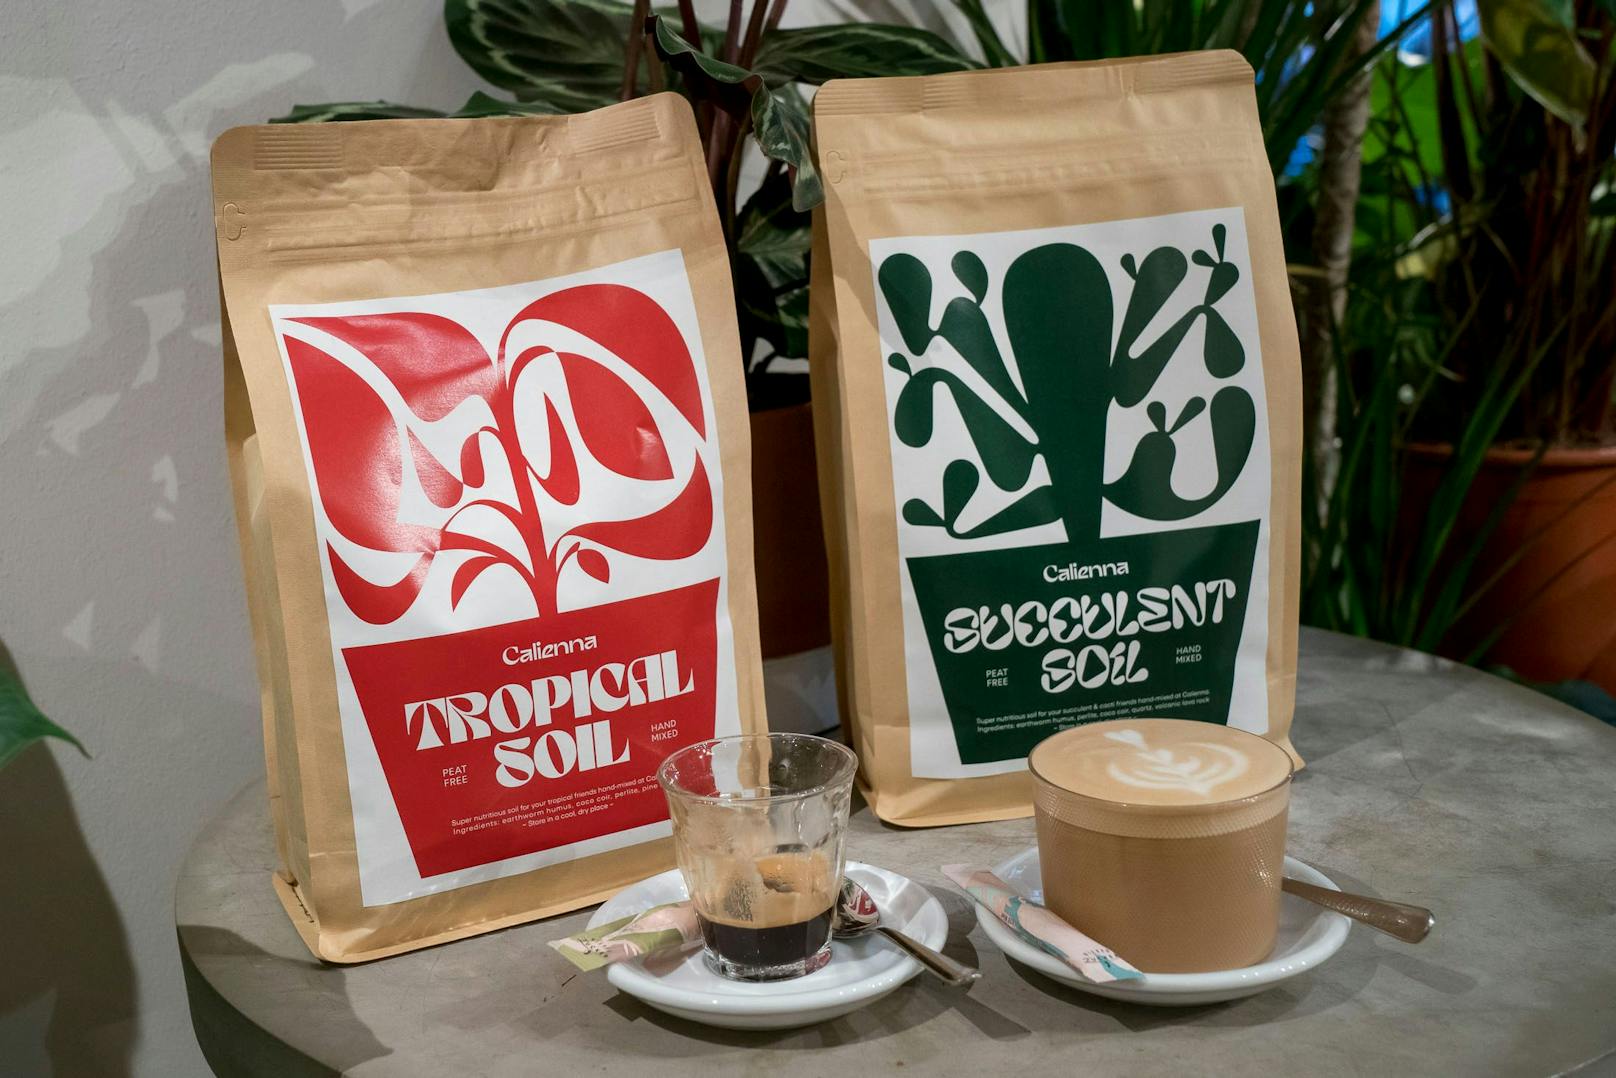 Erde für die Pflanzen, Espresso und Cappuccino für die Pflanzeneltern